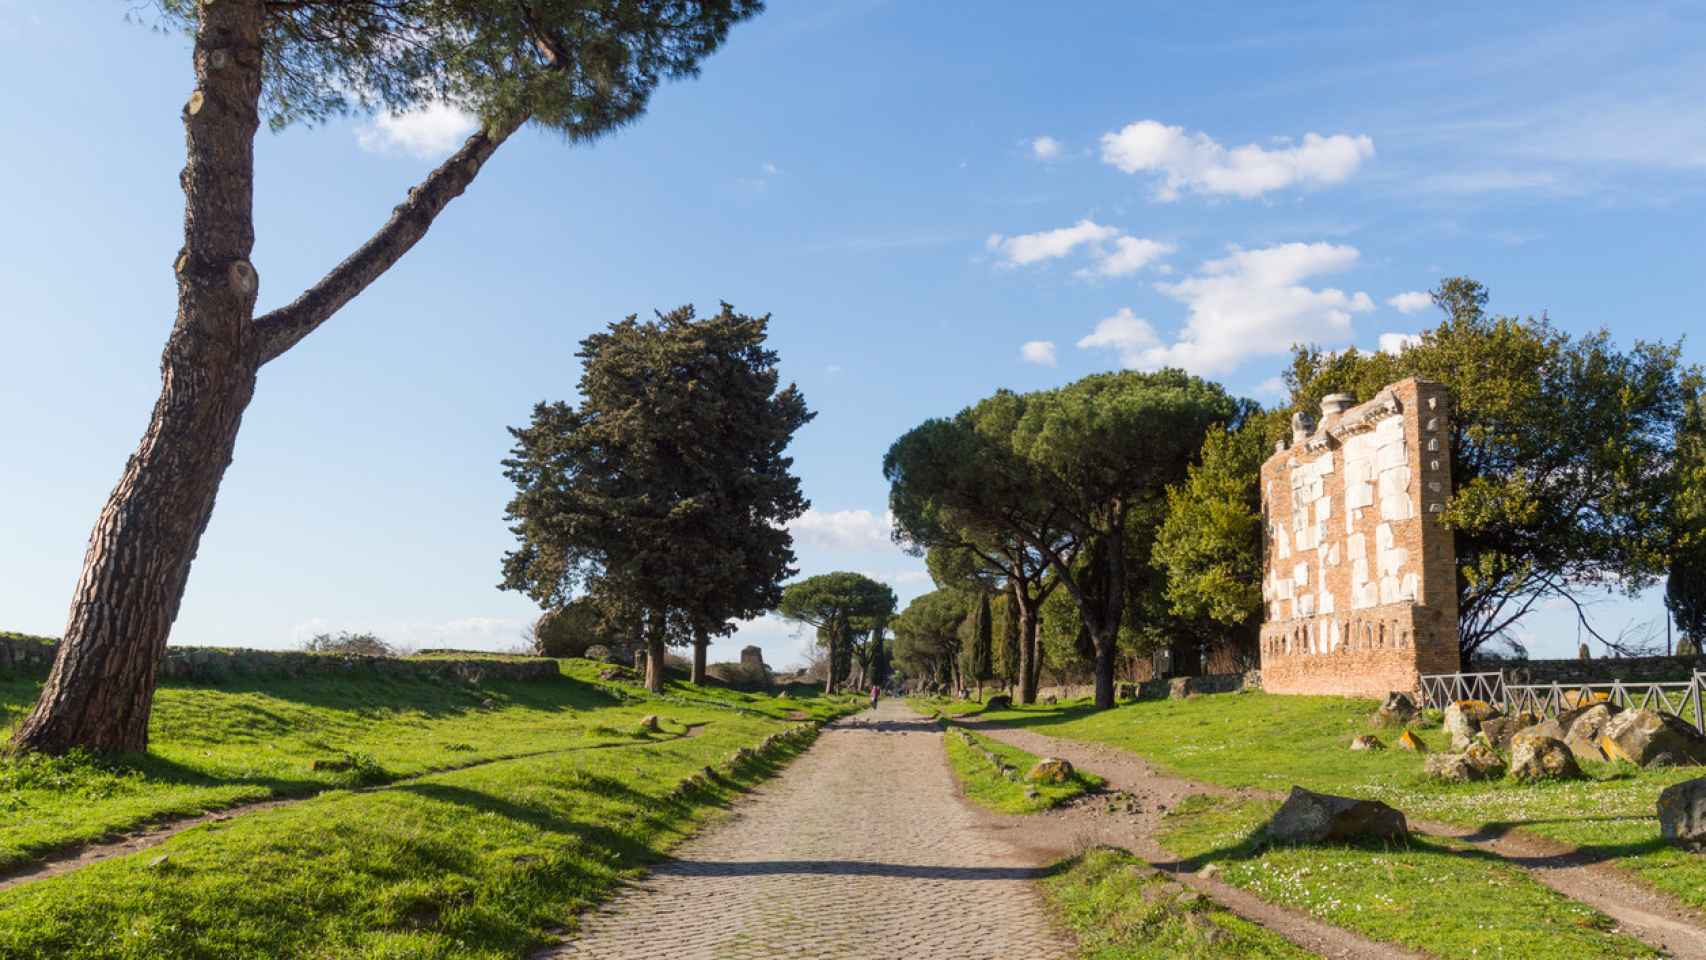 Appia antica (Antigua Appia) cerca de Roma, Italia